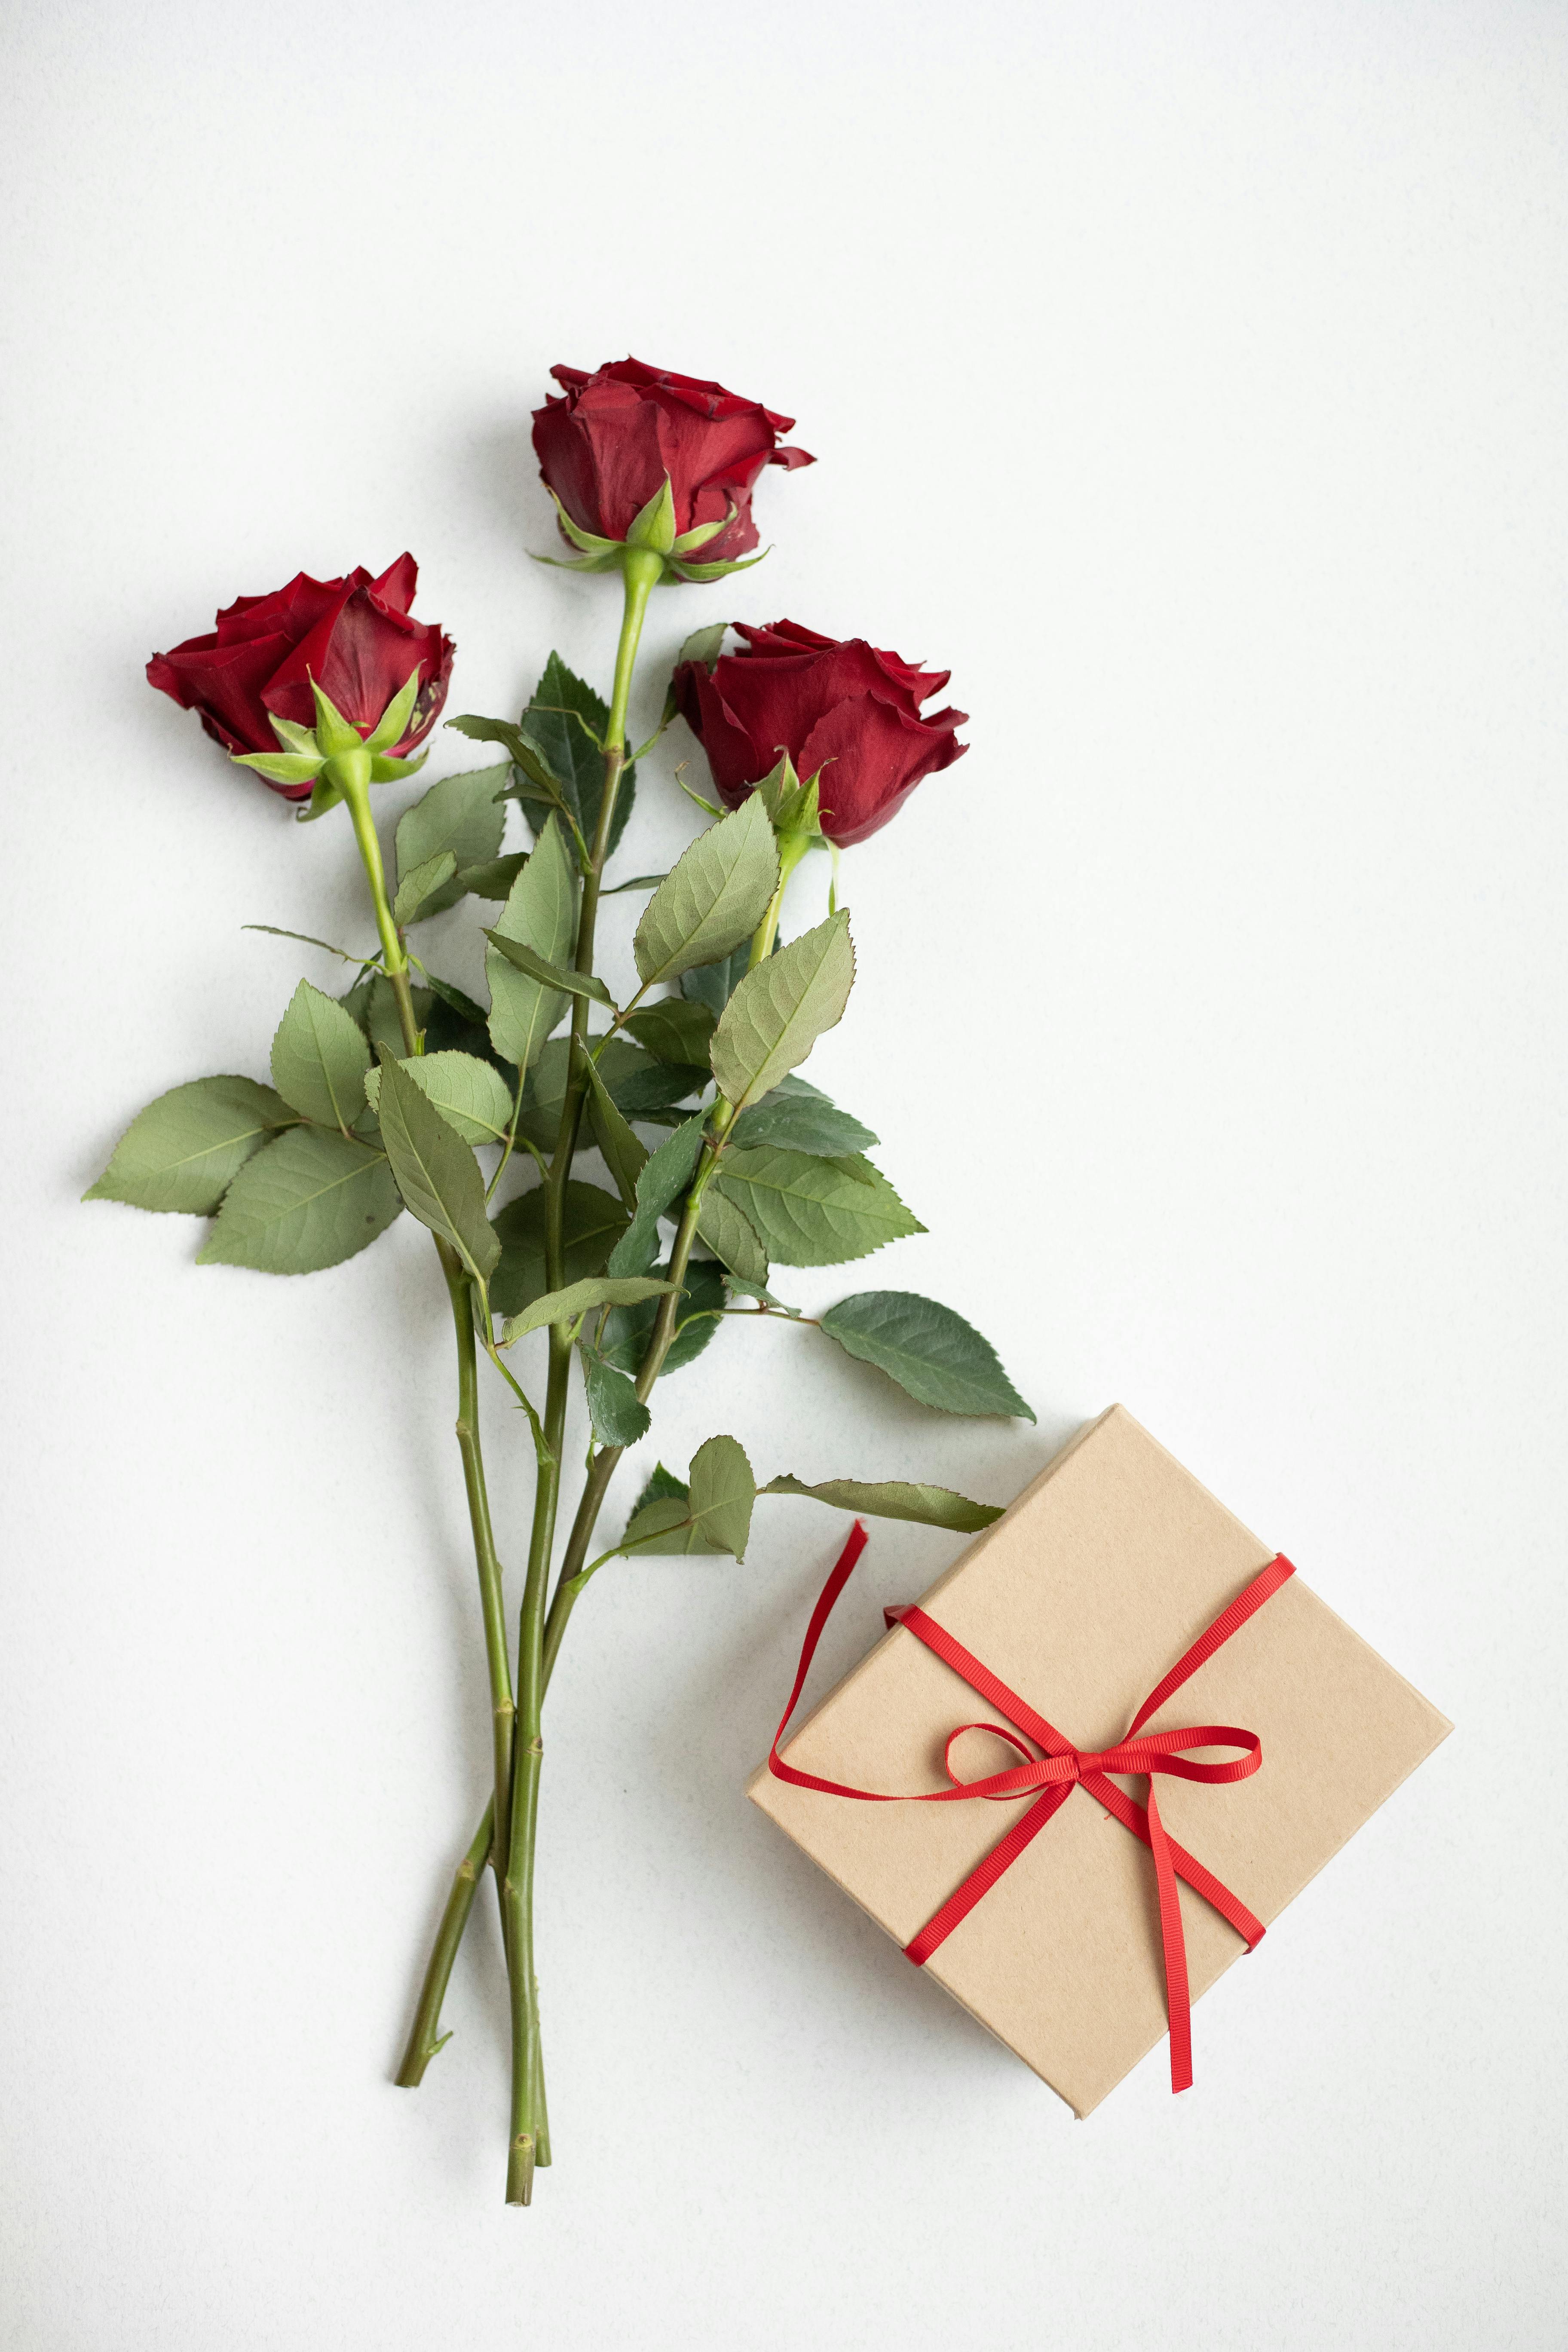 Una caja de regalo y unas rosas | Fuente: Pexels